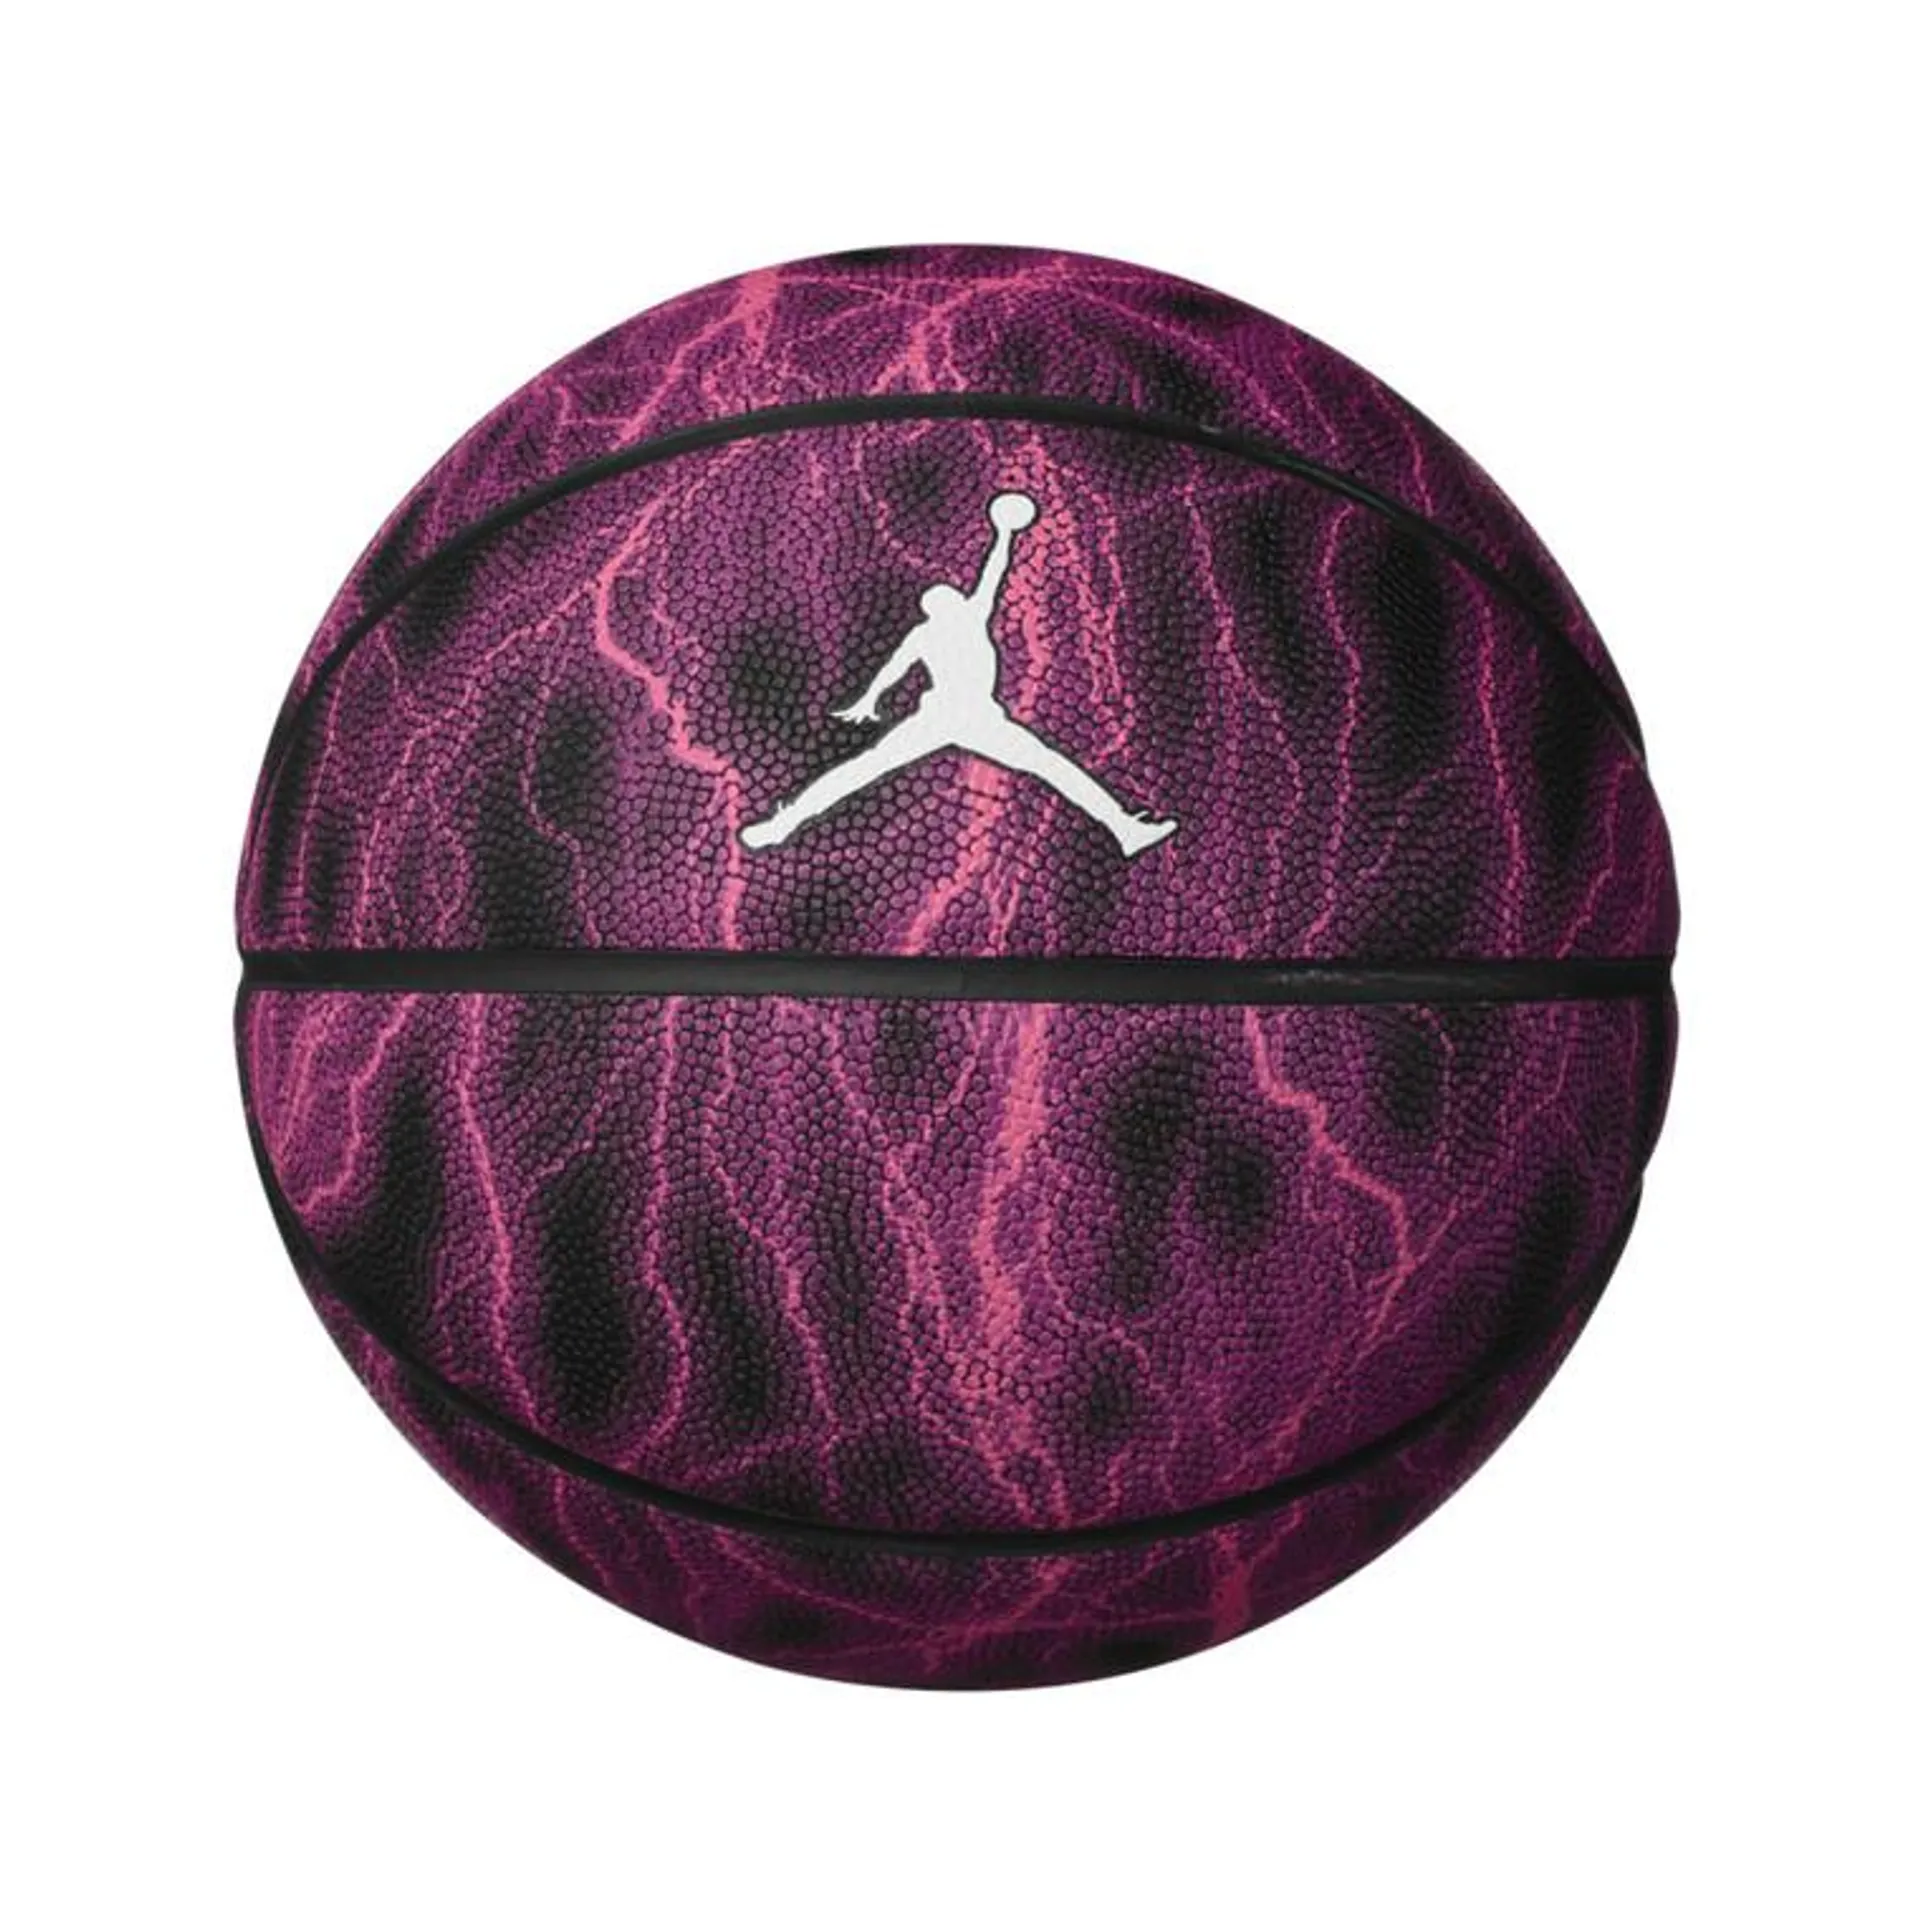 Nike Jordan Energy 8P Composite Basketball Hyper Pink/Black/Black/White Size 7